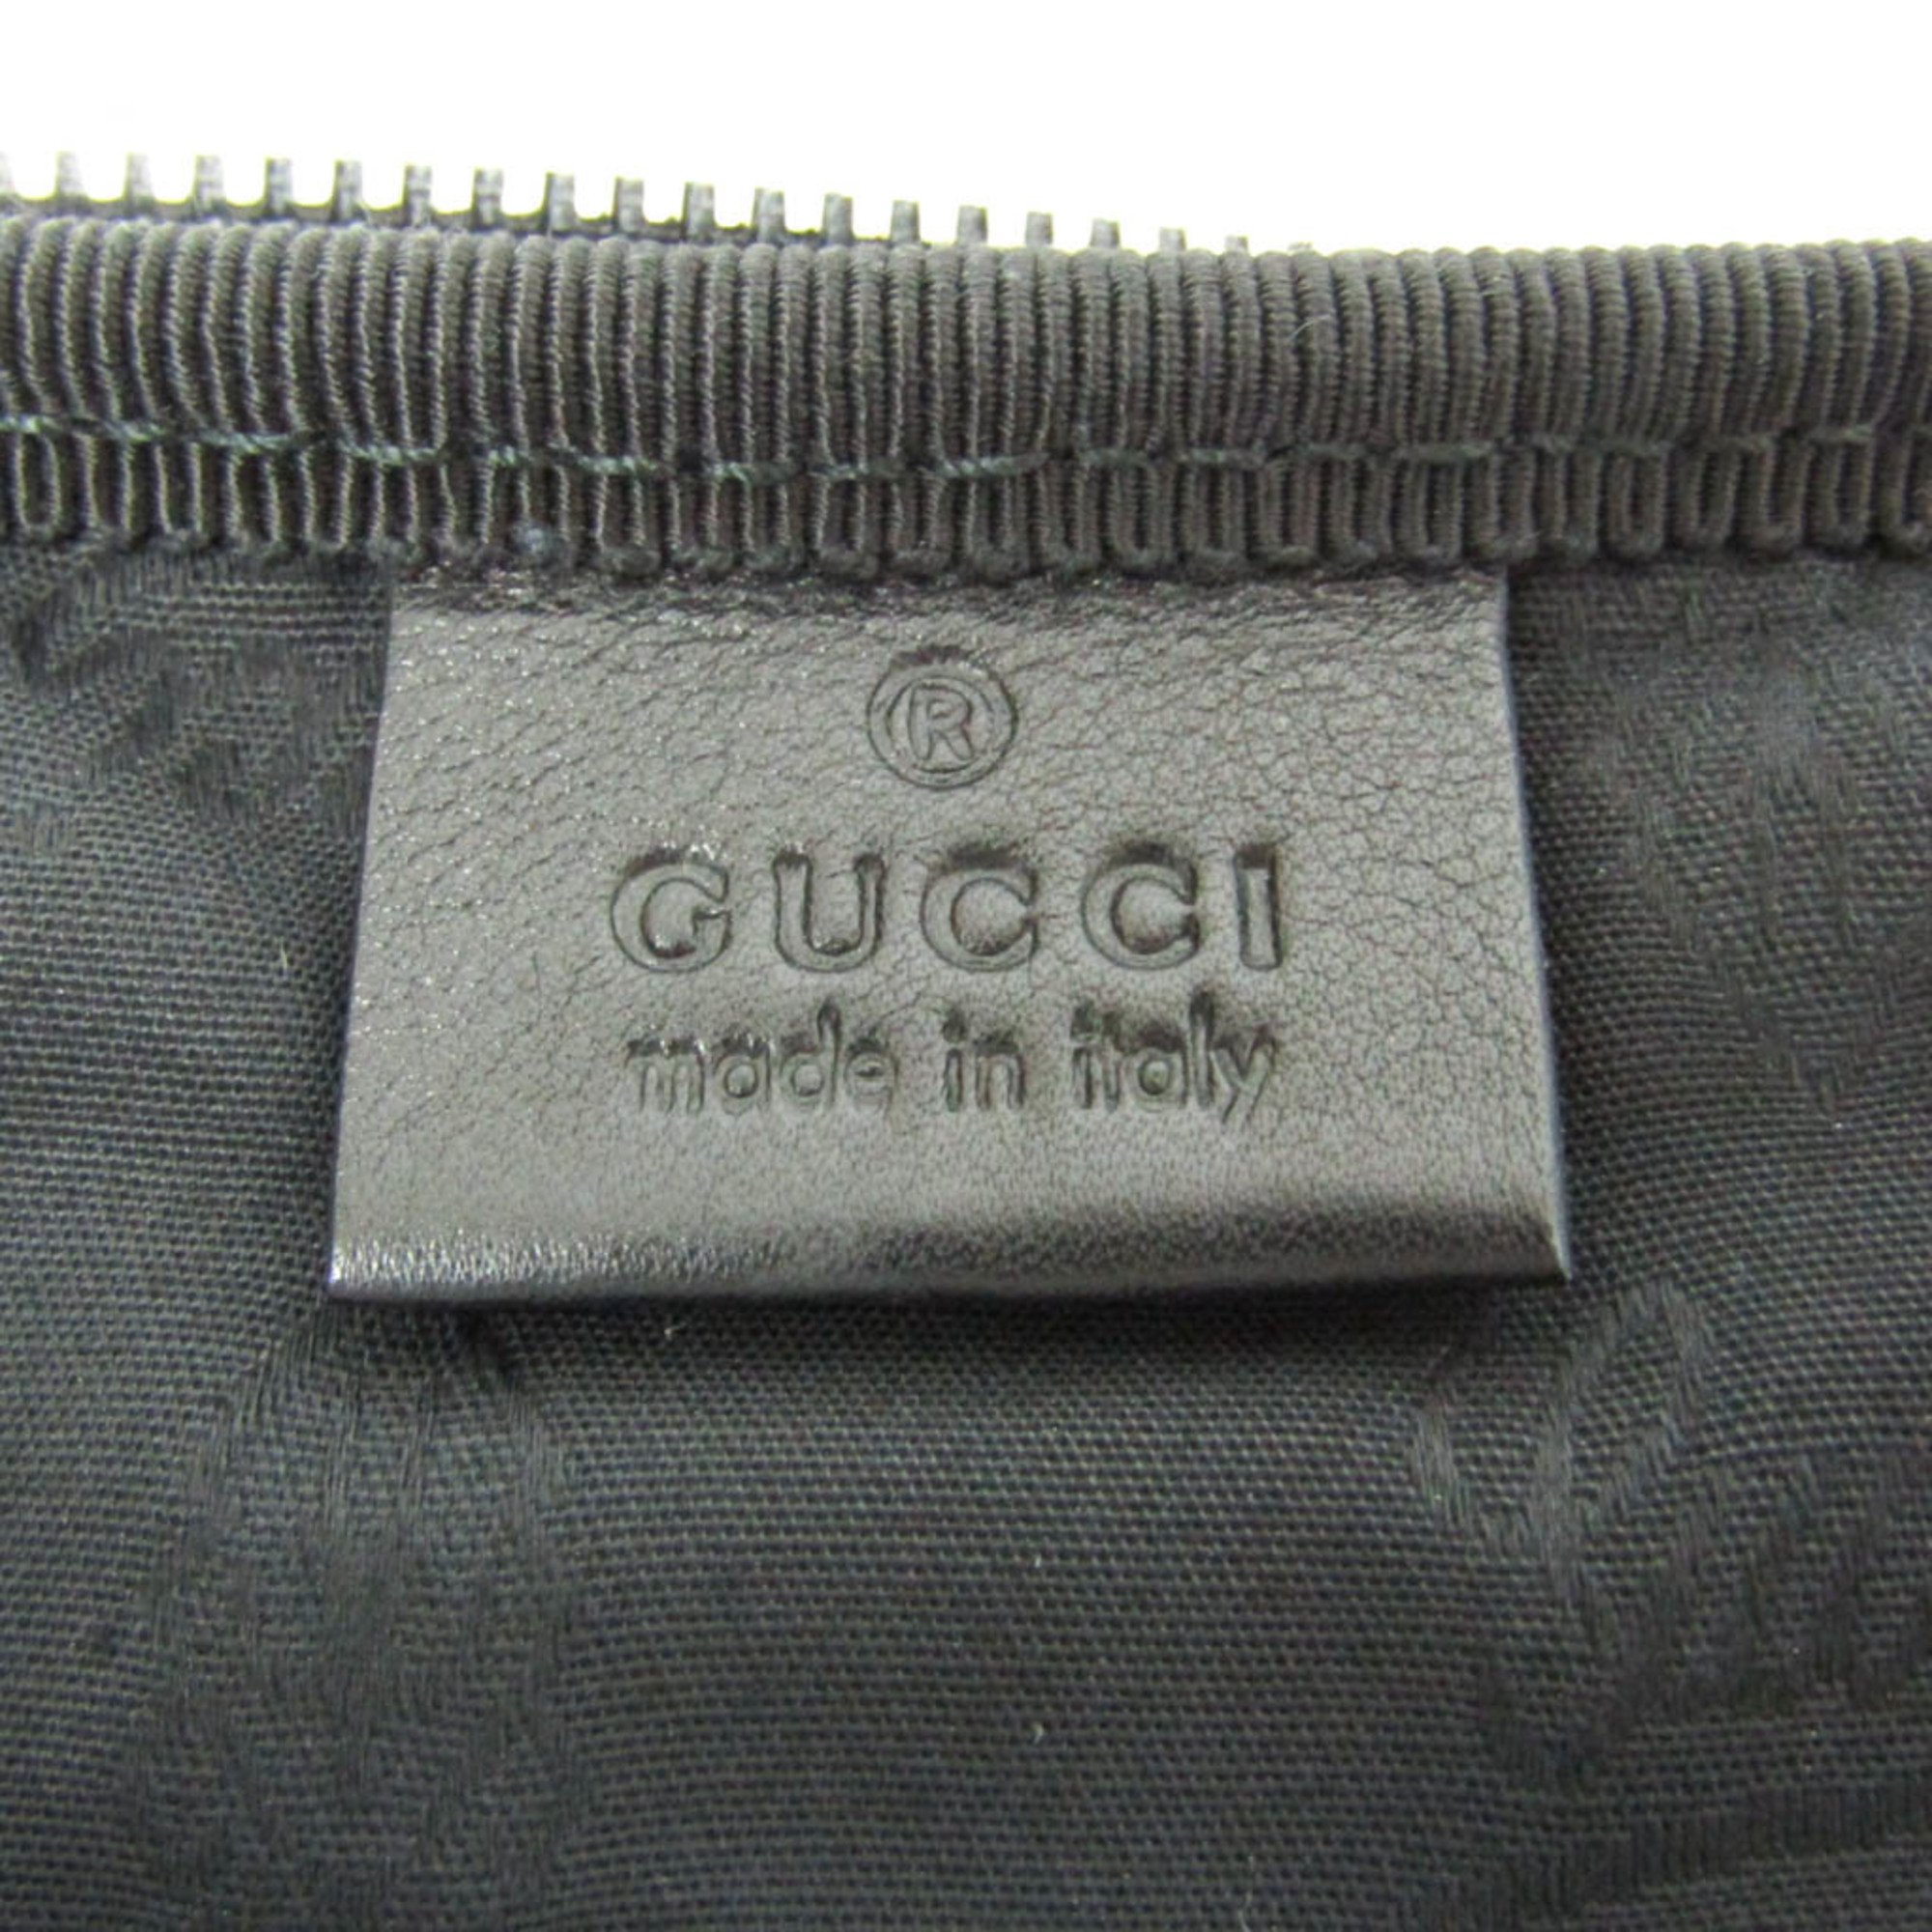 グッチ(Gucci) Limited Edition ネクタイケース 268114 メンズ ネクタイ レザー グレー